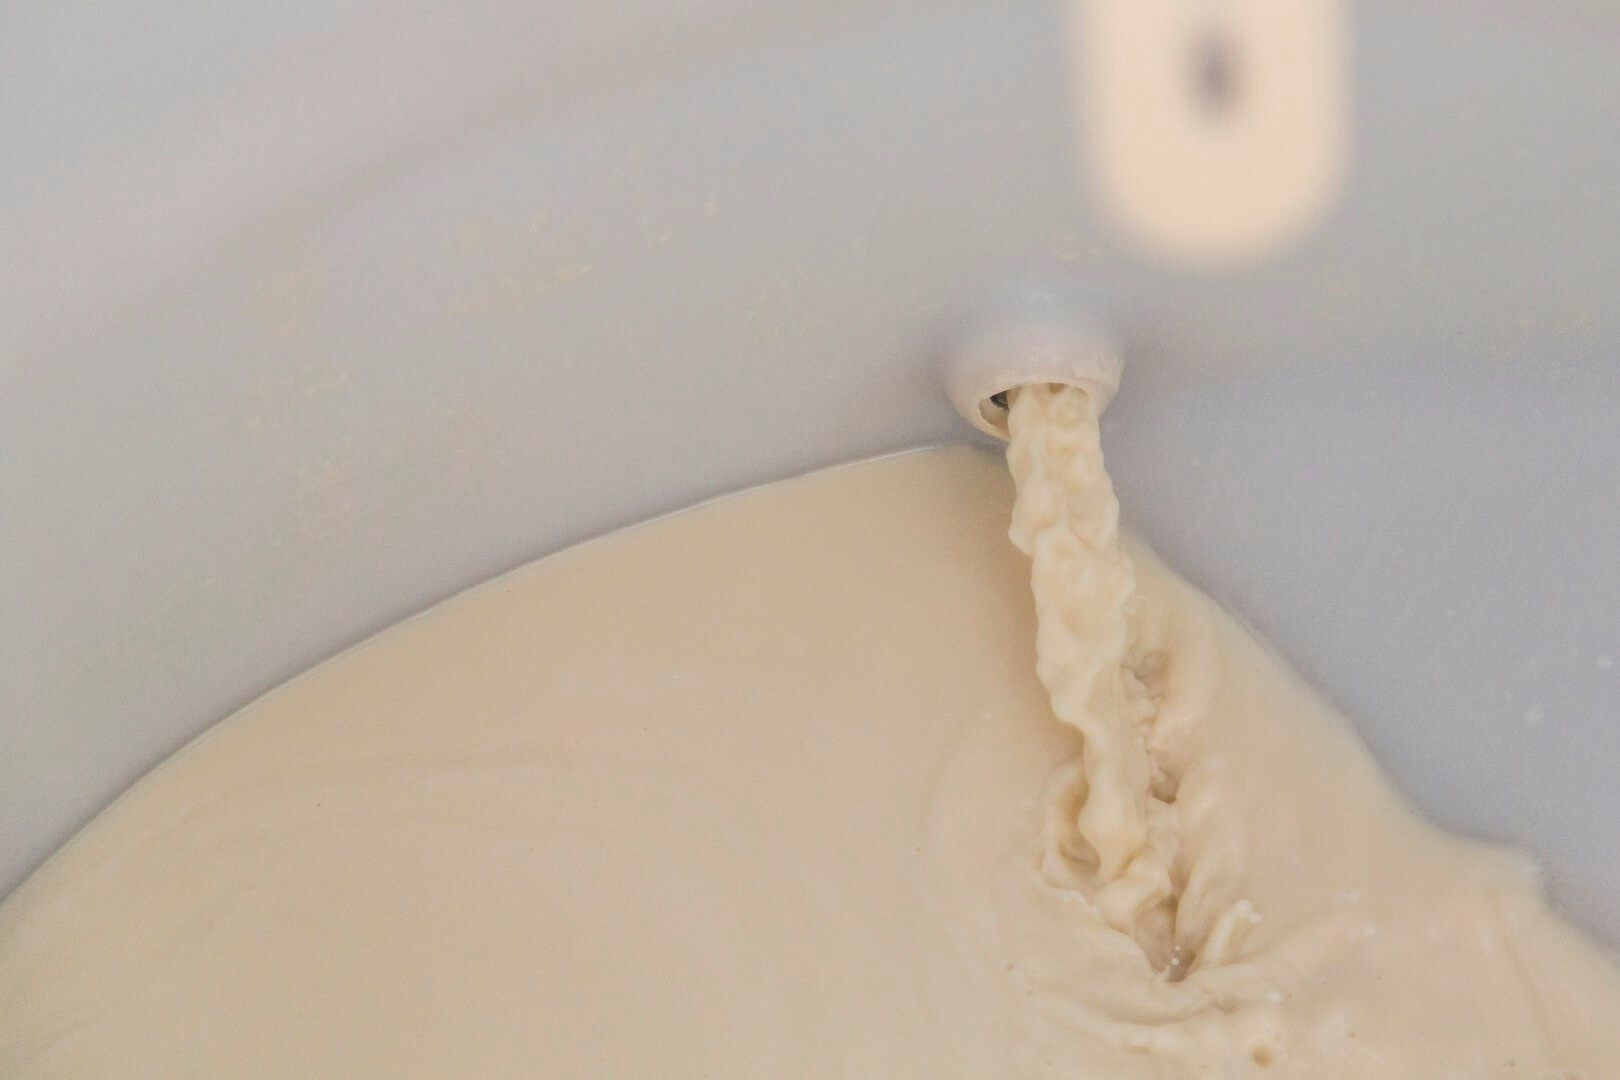 De melk of pap wordt voortdurend rondgepompt. 